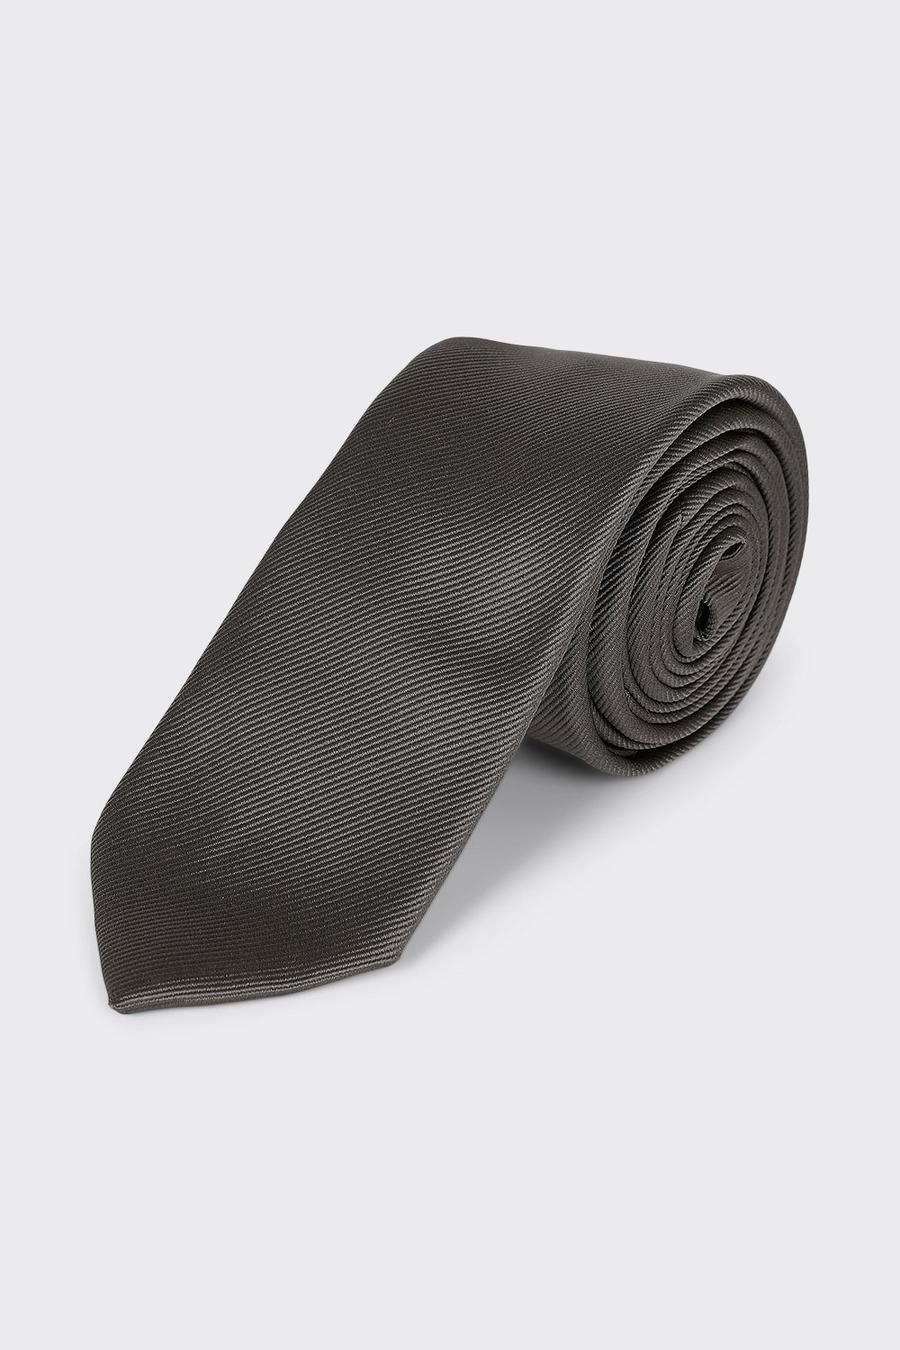 Slim Dark Grey Tie